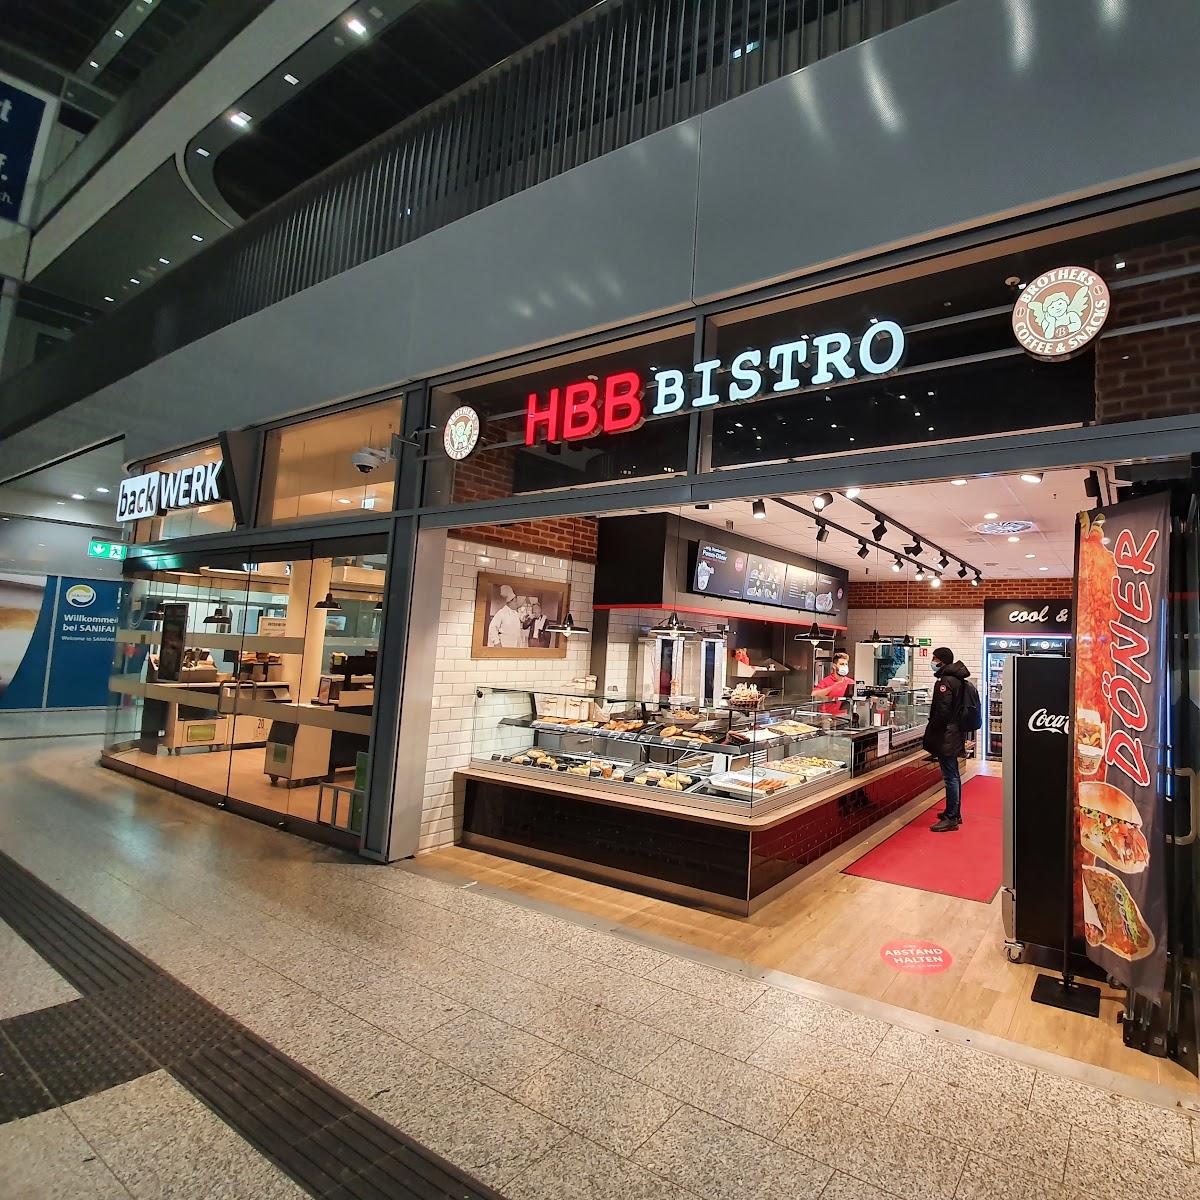 Restaurant "HBB Bistro" in Münster